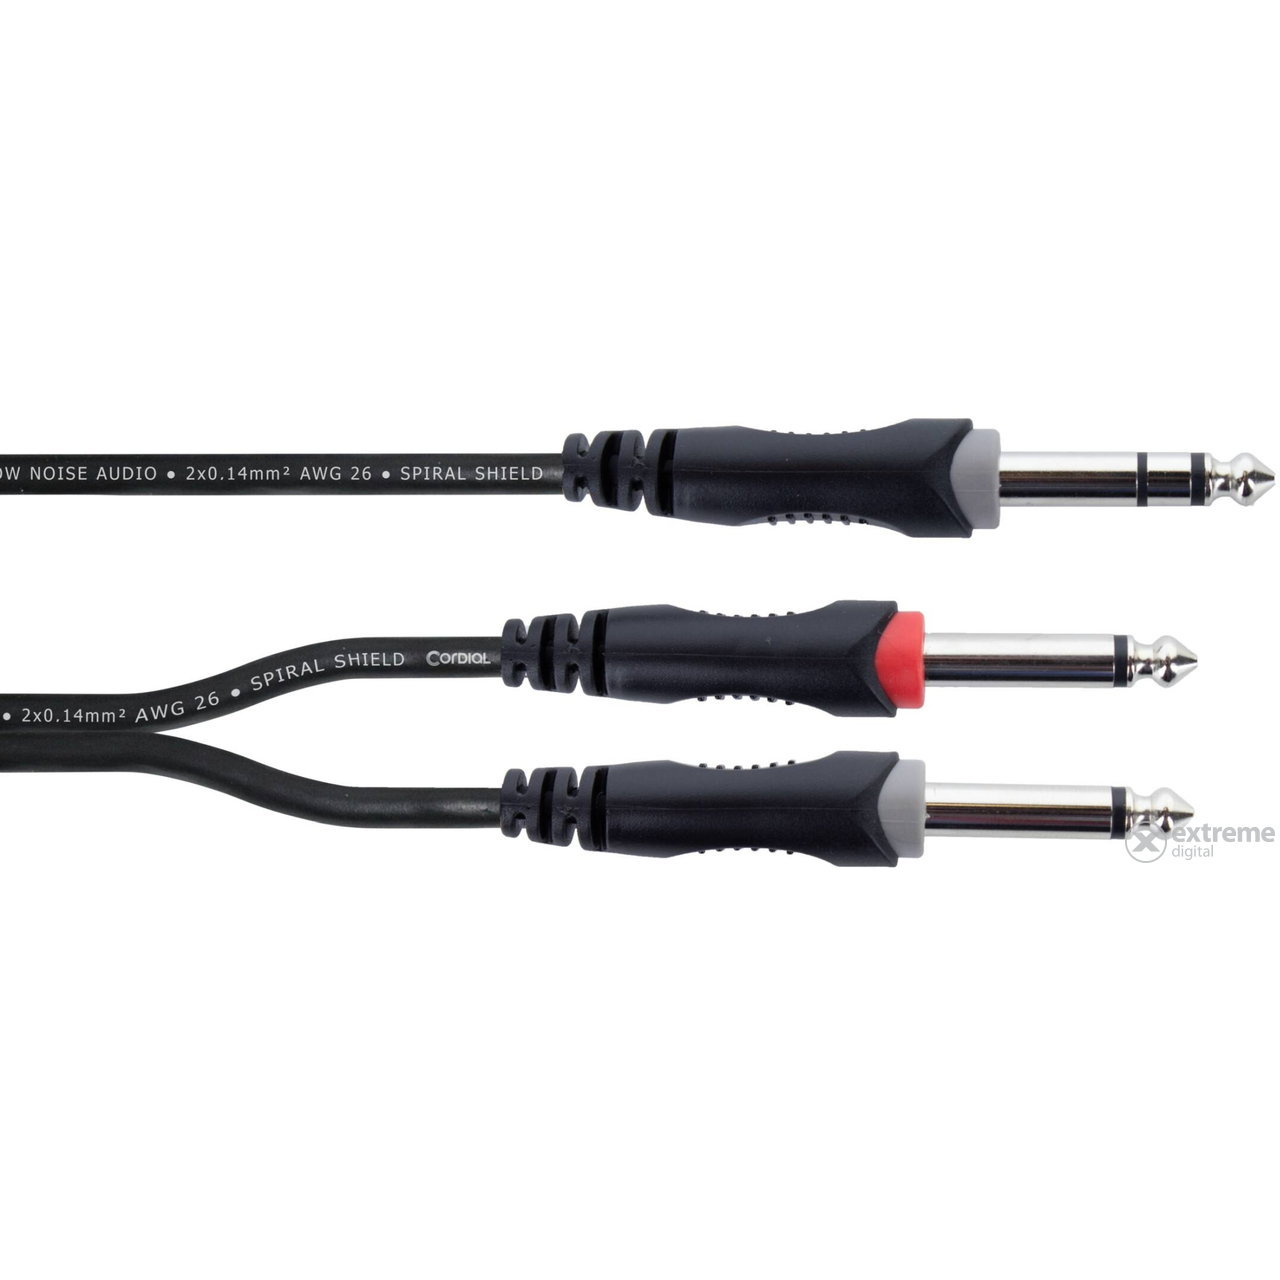 CORDIAL EY 1.5 VPP 1,5 m, 1 X jack 6,3 mm stereo / 2X priključak 6,3 mm mono kabel